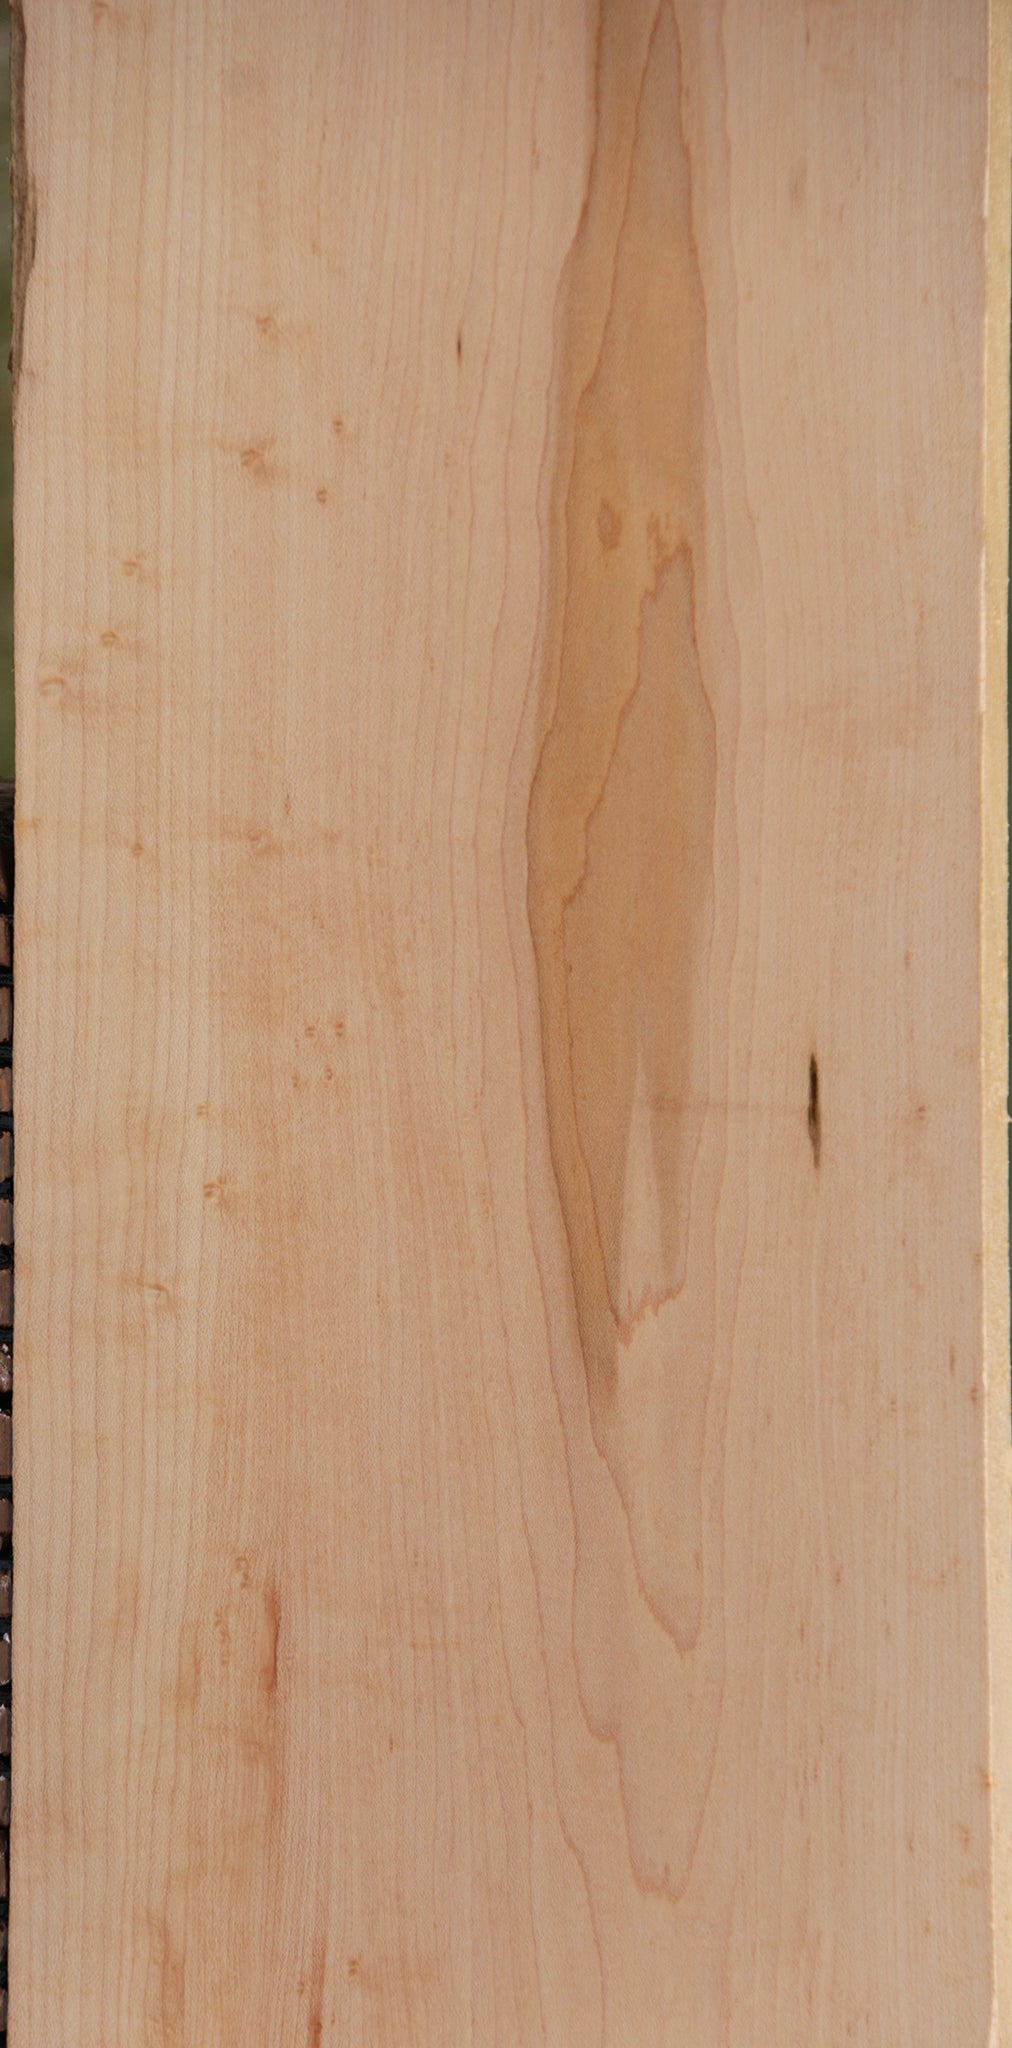 Extra Fancy Birdseye Maple Lumber